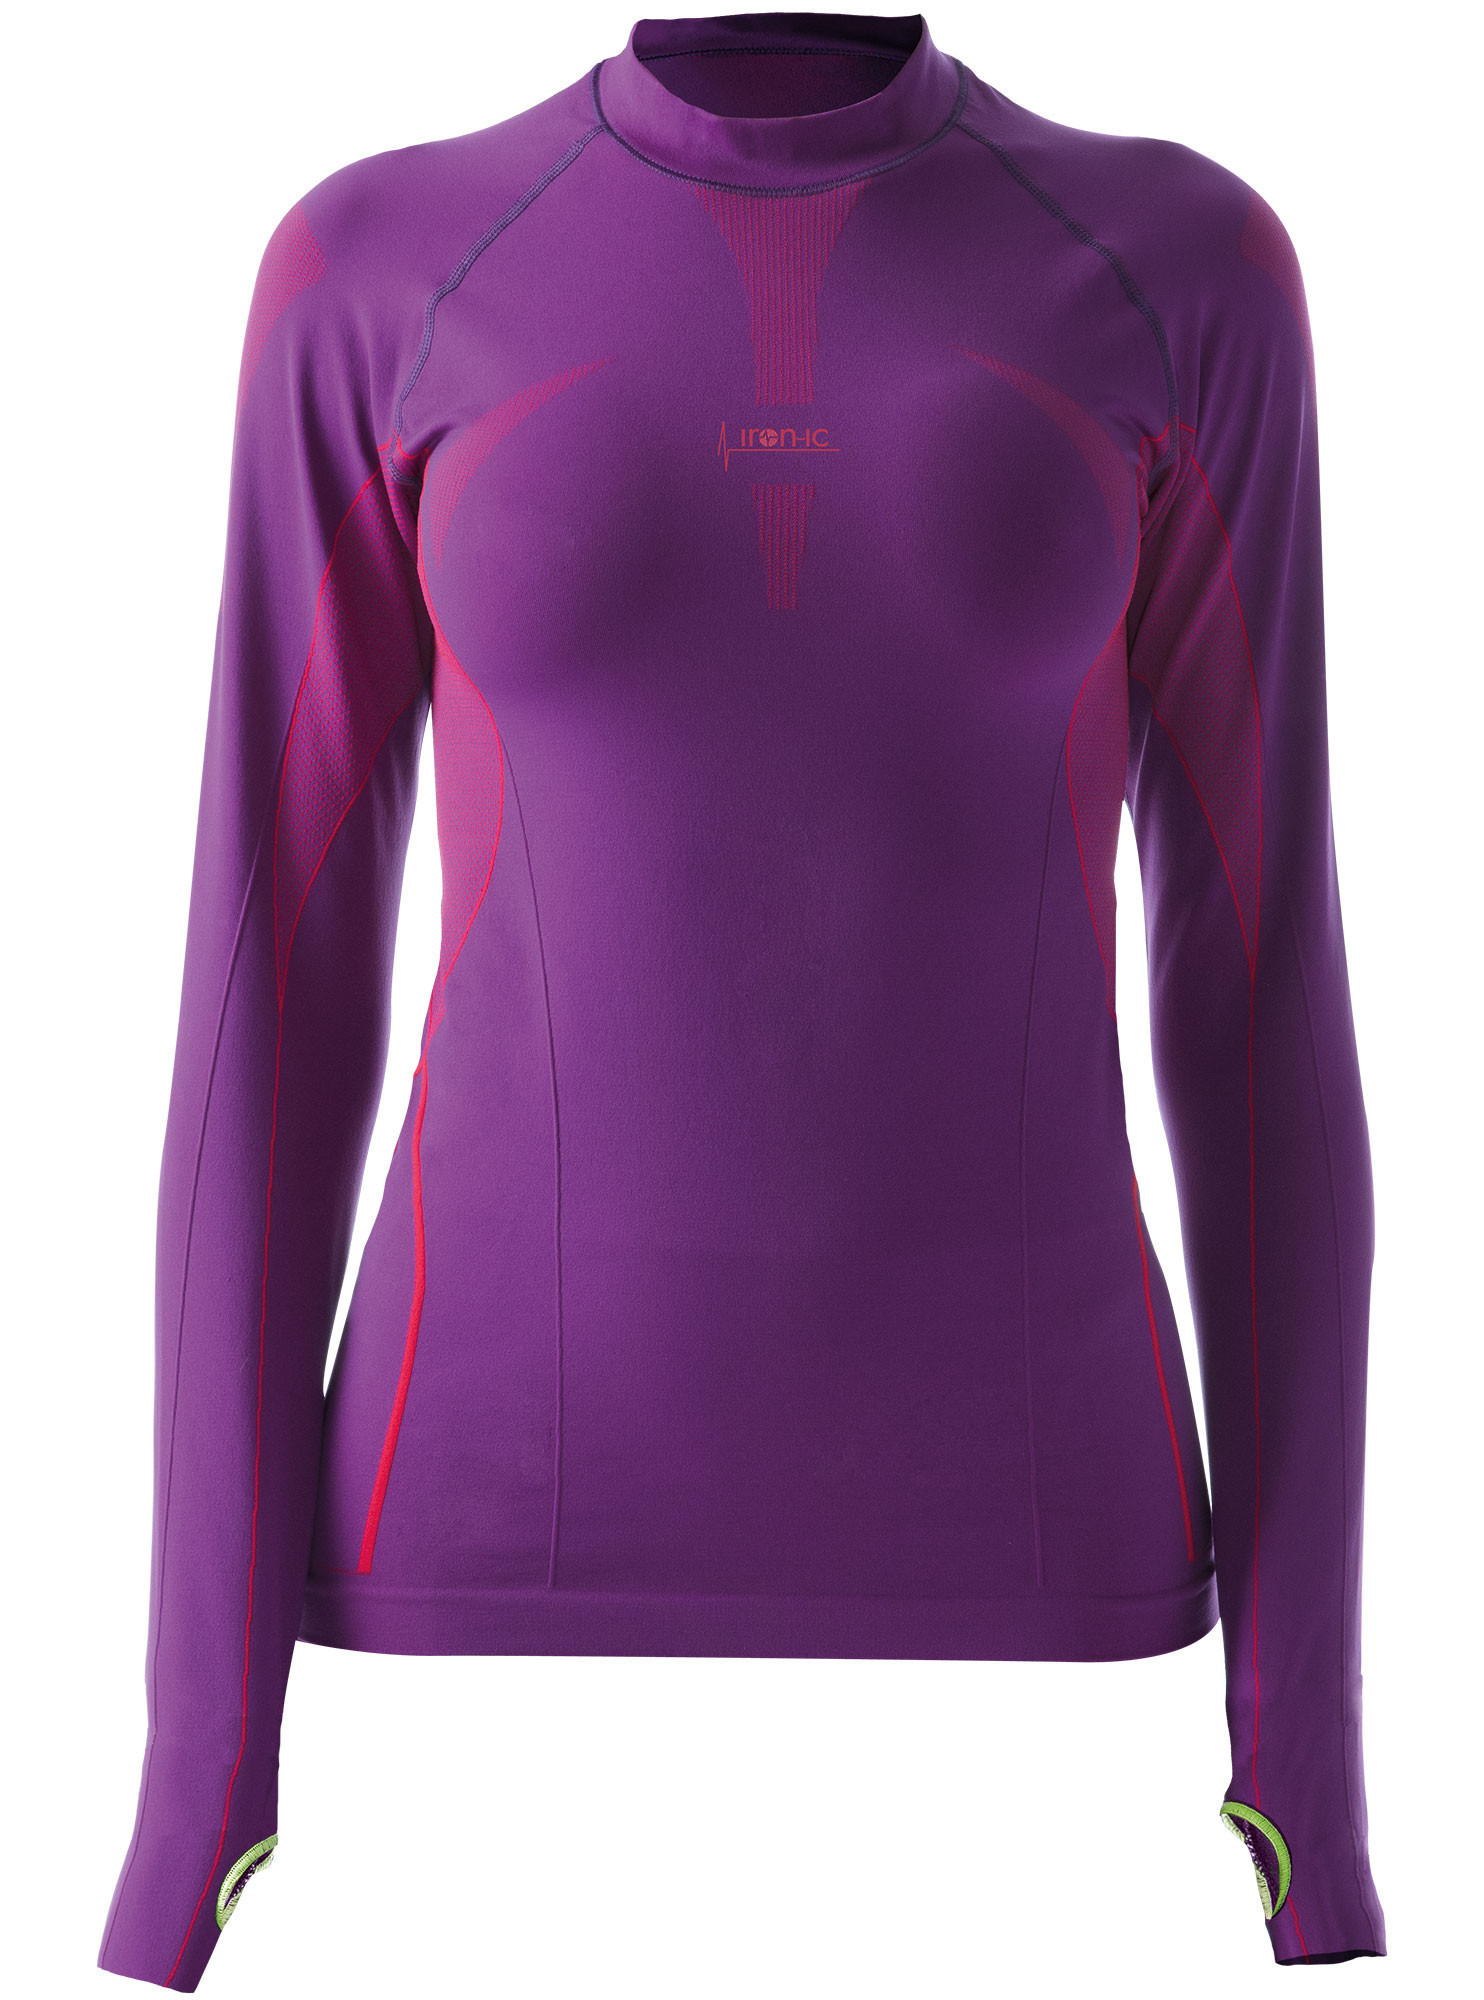 Dámské sportovní tričko s dlouhým rukávem IRON-IC - fialová Barva: Violet NY, Velikost: M/L